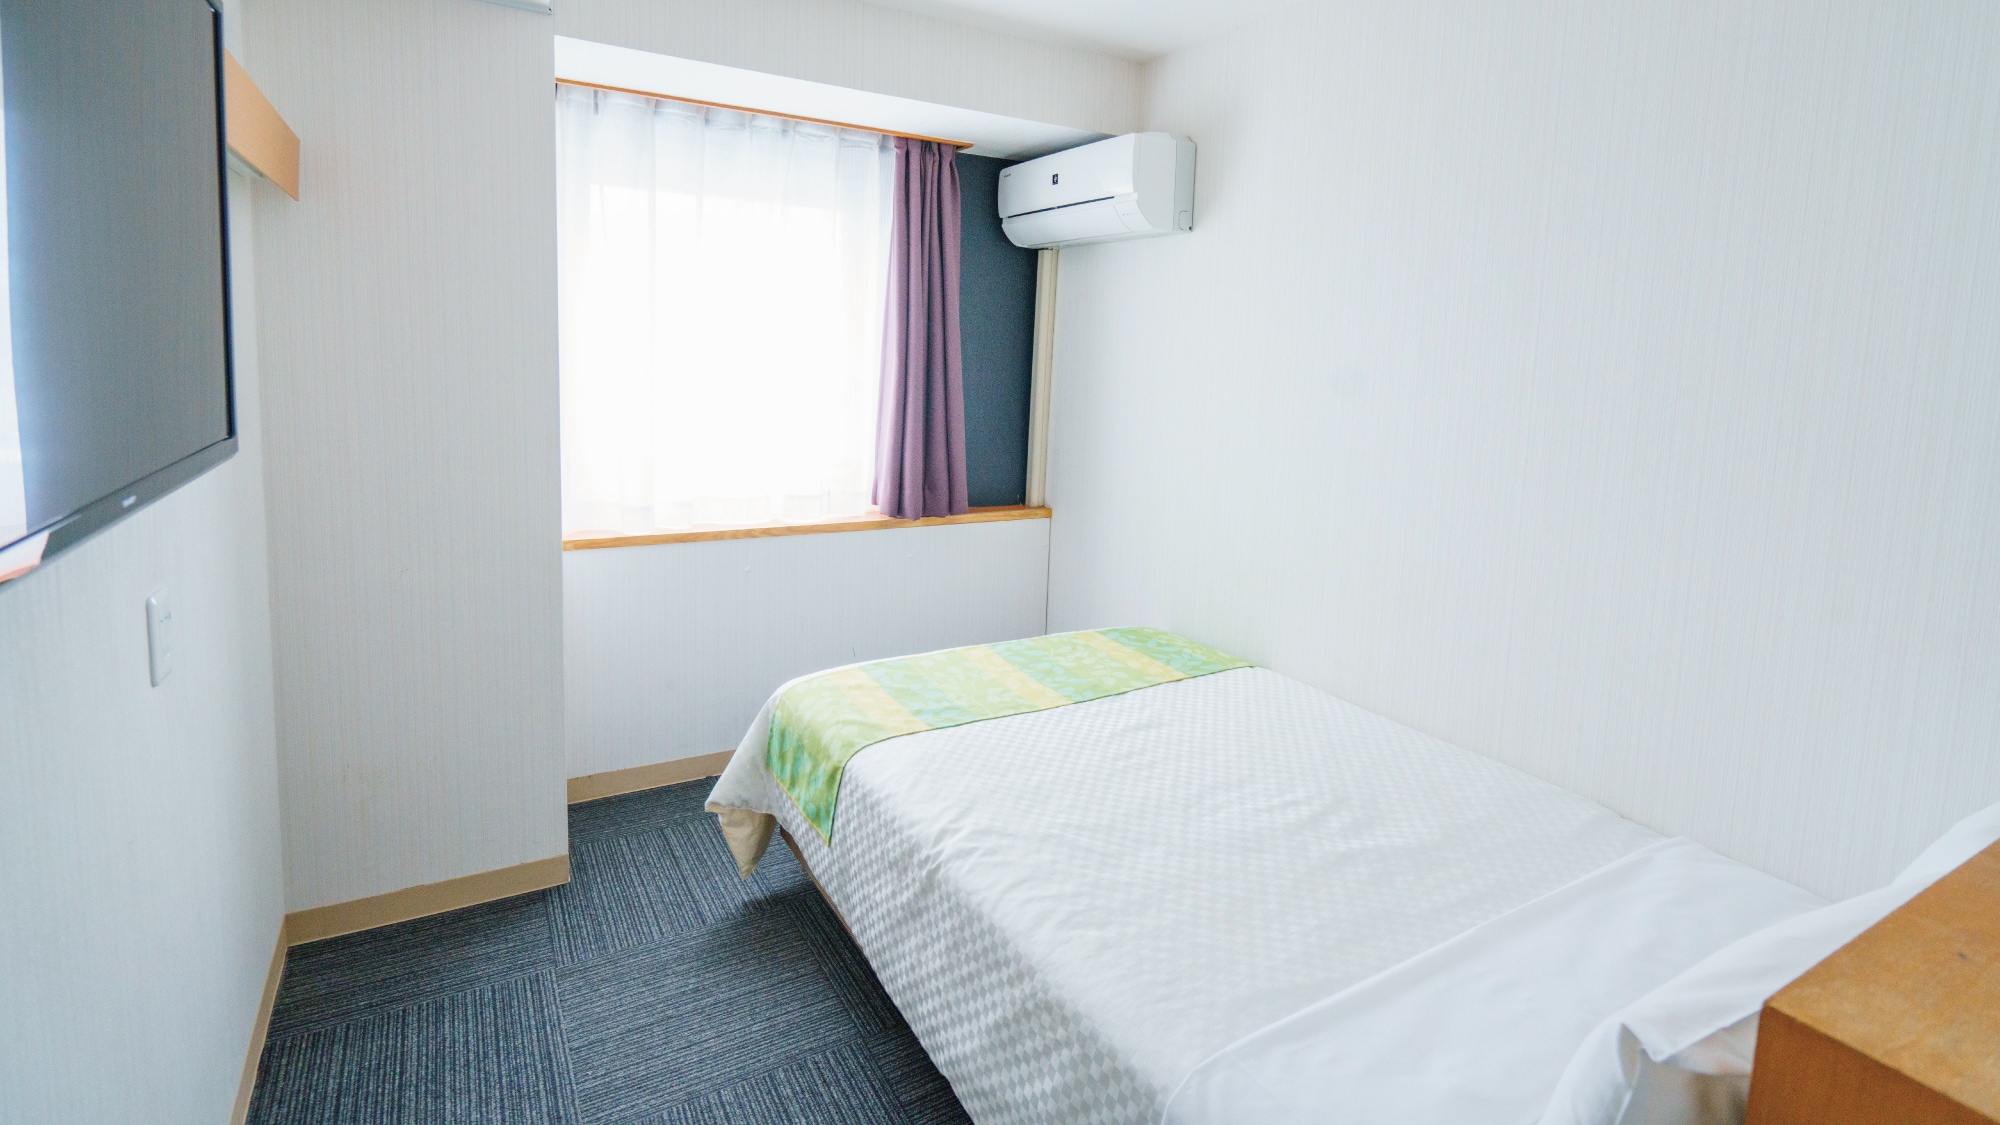 Kamar semi-double adalah kamar sederhana dan dapat menampung hingga 2 orang yang berbagi satu tempat tidur.